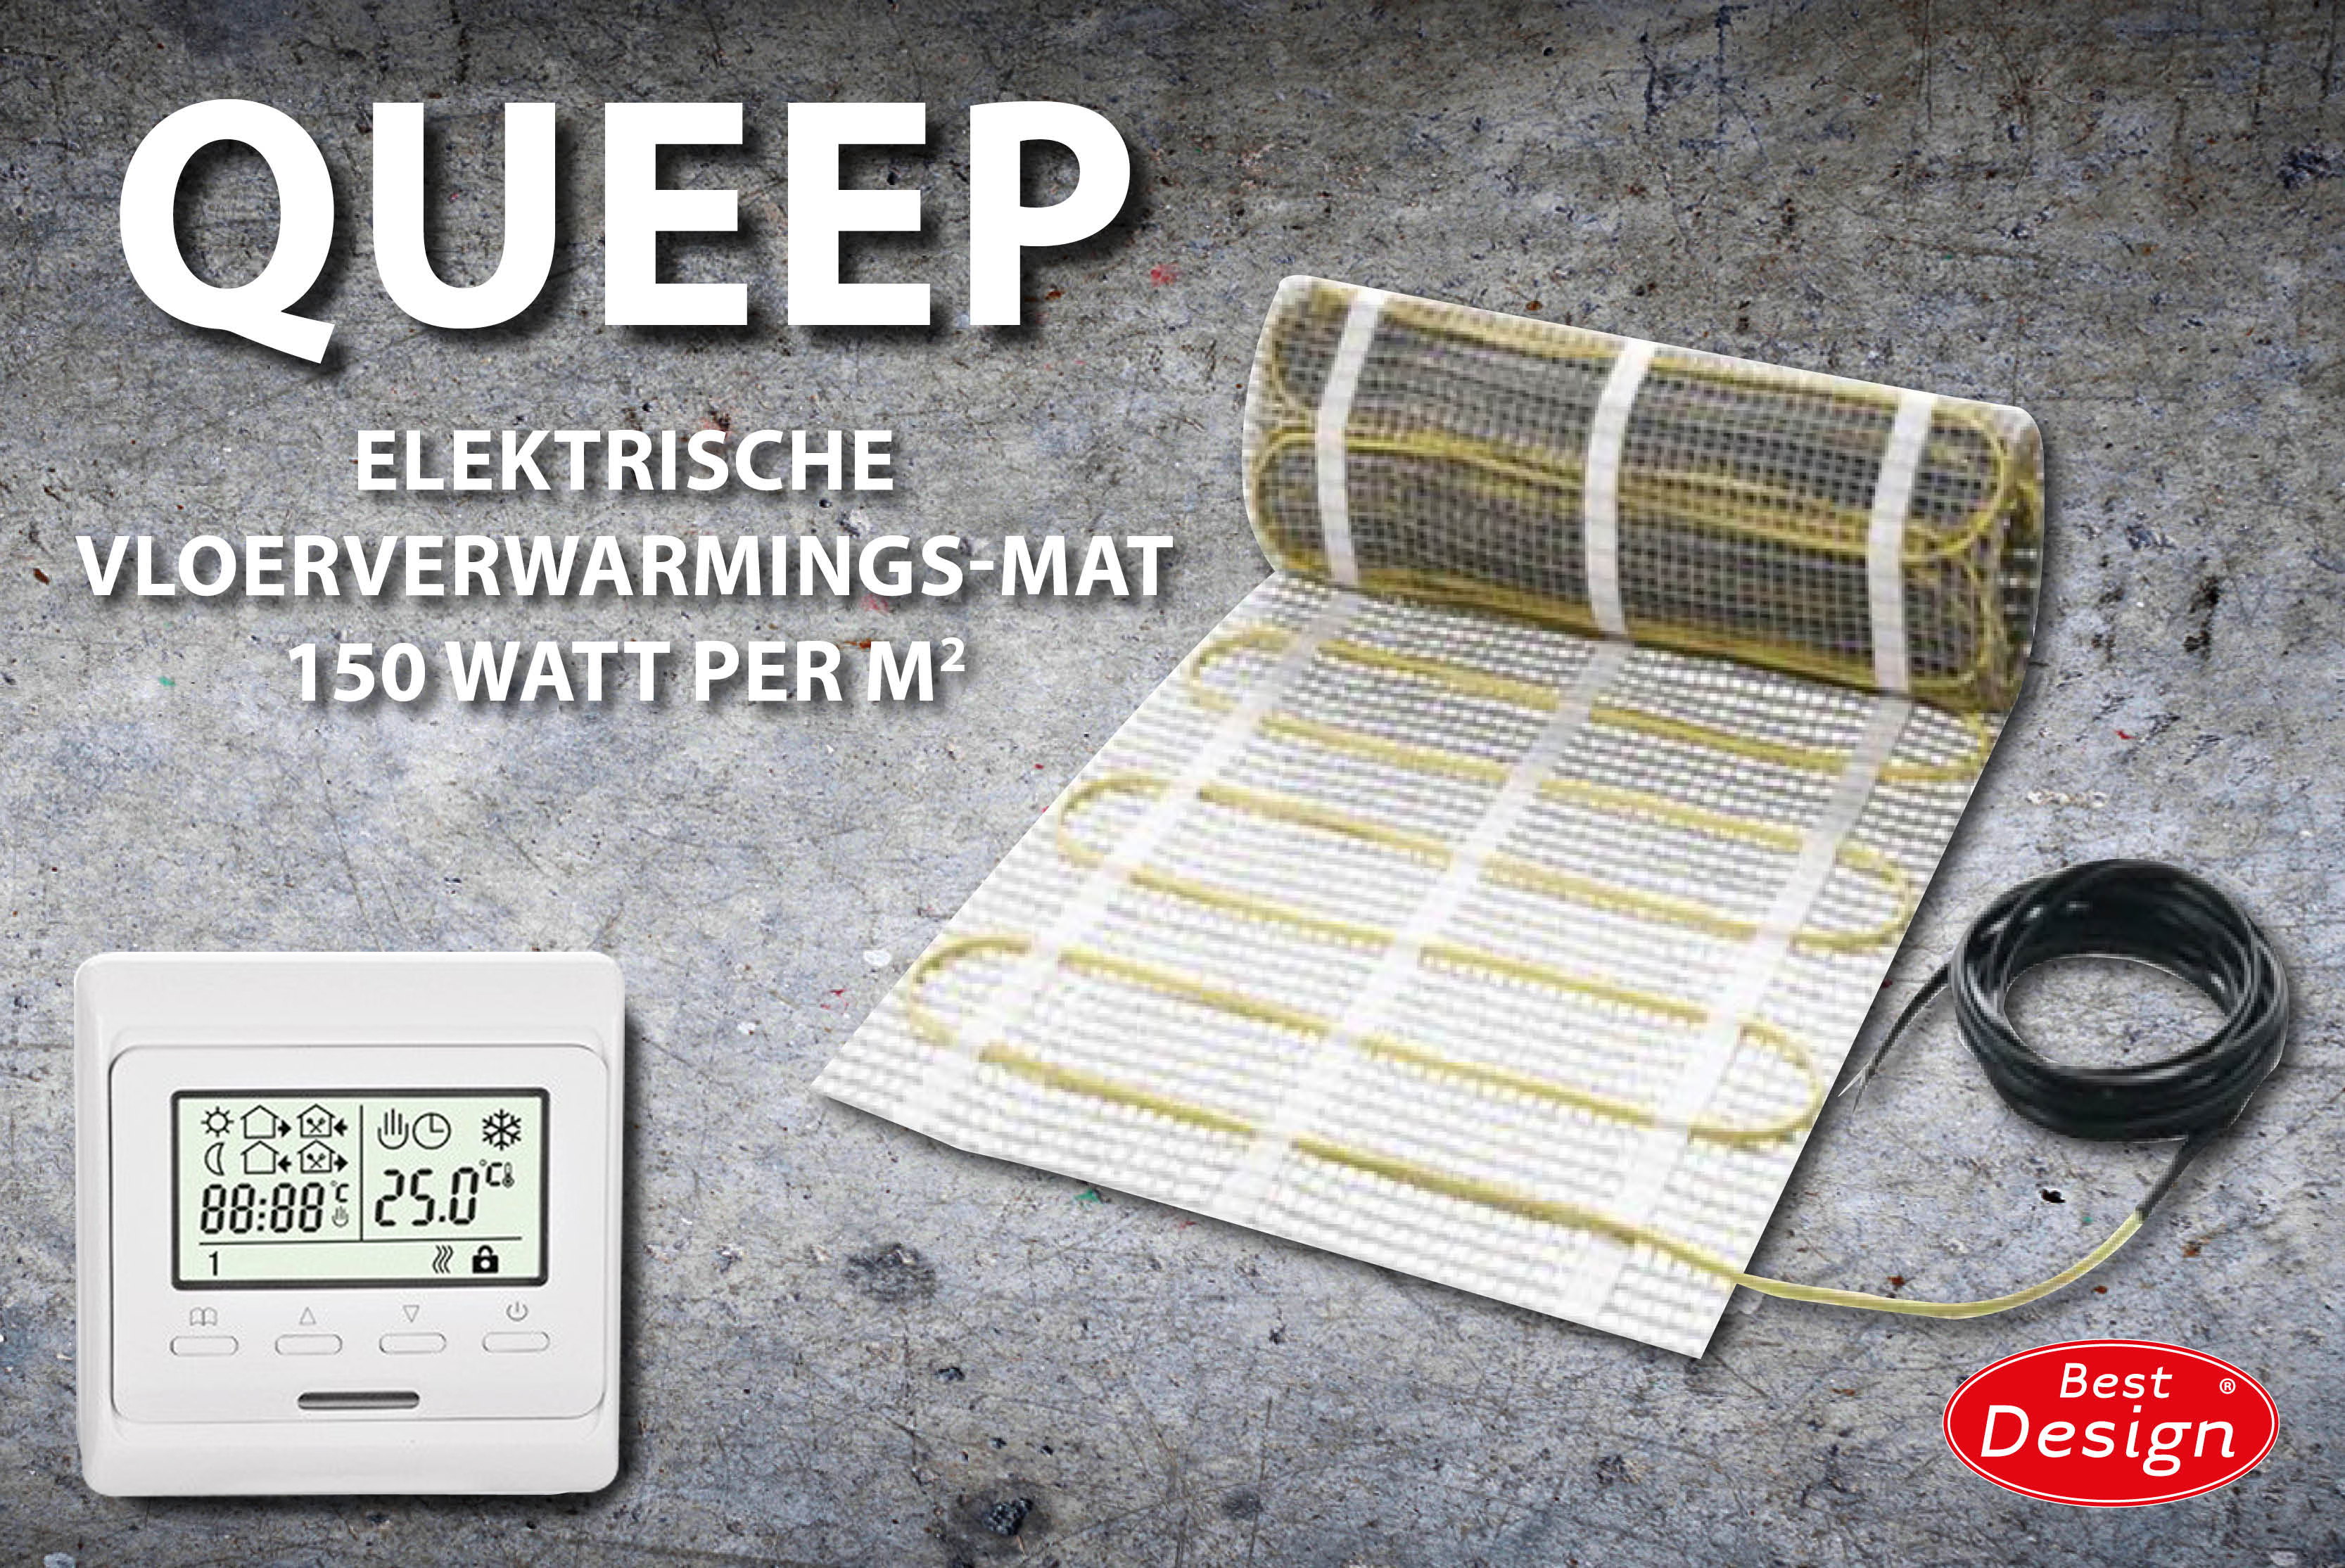 Best-Design Queep elektrische vloerverwarmings-mat 9.0 m2 Top Merken Winkel